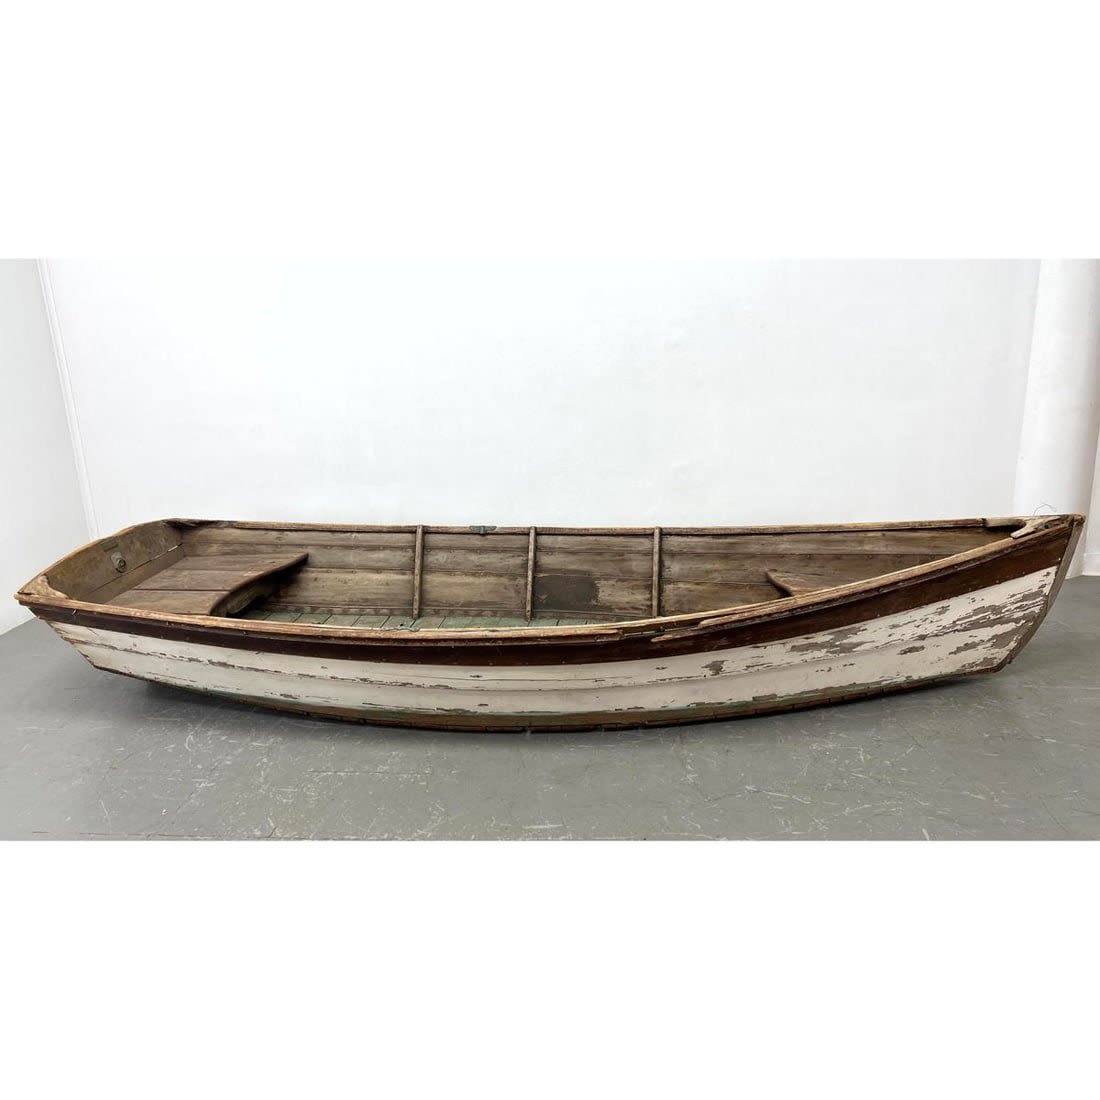 11 foot Vintage Wood Rowboat. Painted